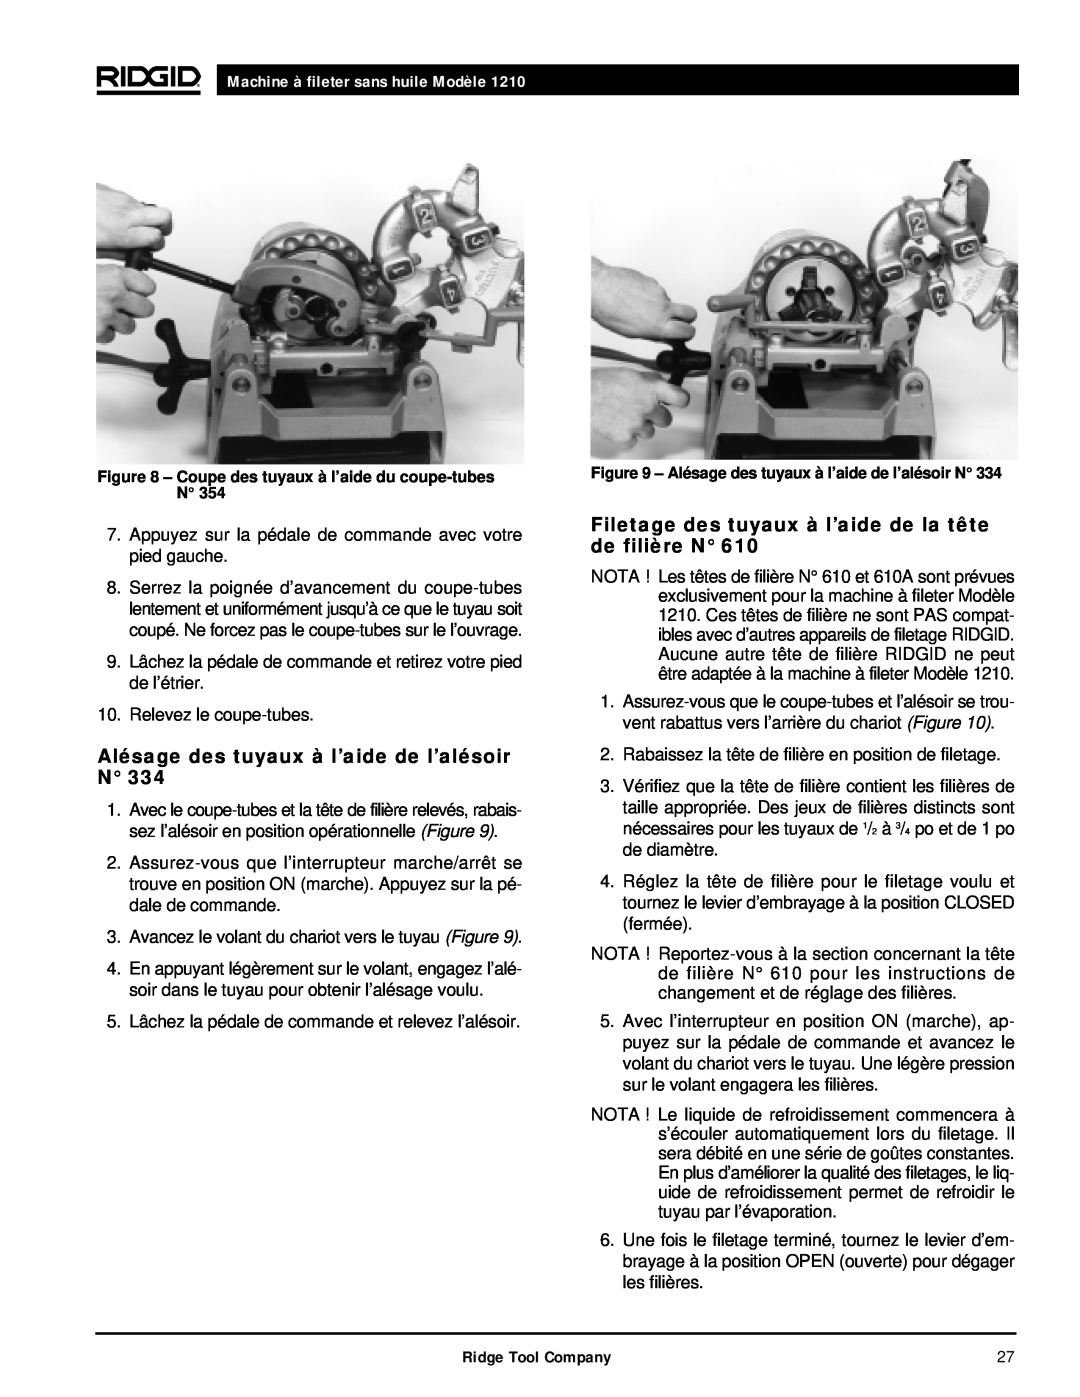 RIDGID 1210 manual Alésage des tuyaux à l’aide de l’alésoir N, Filetage des tuyaux à l’aide de la tête de filière N 